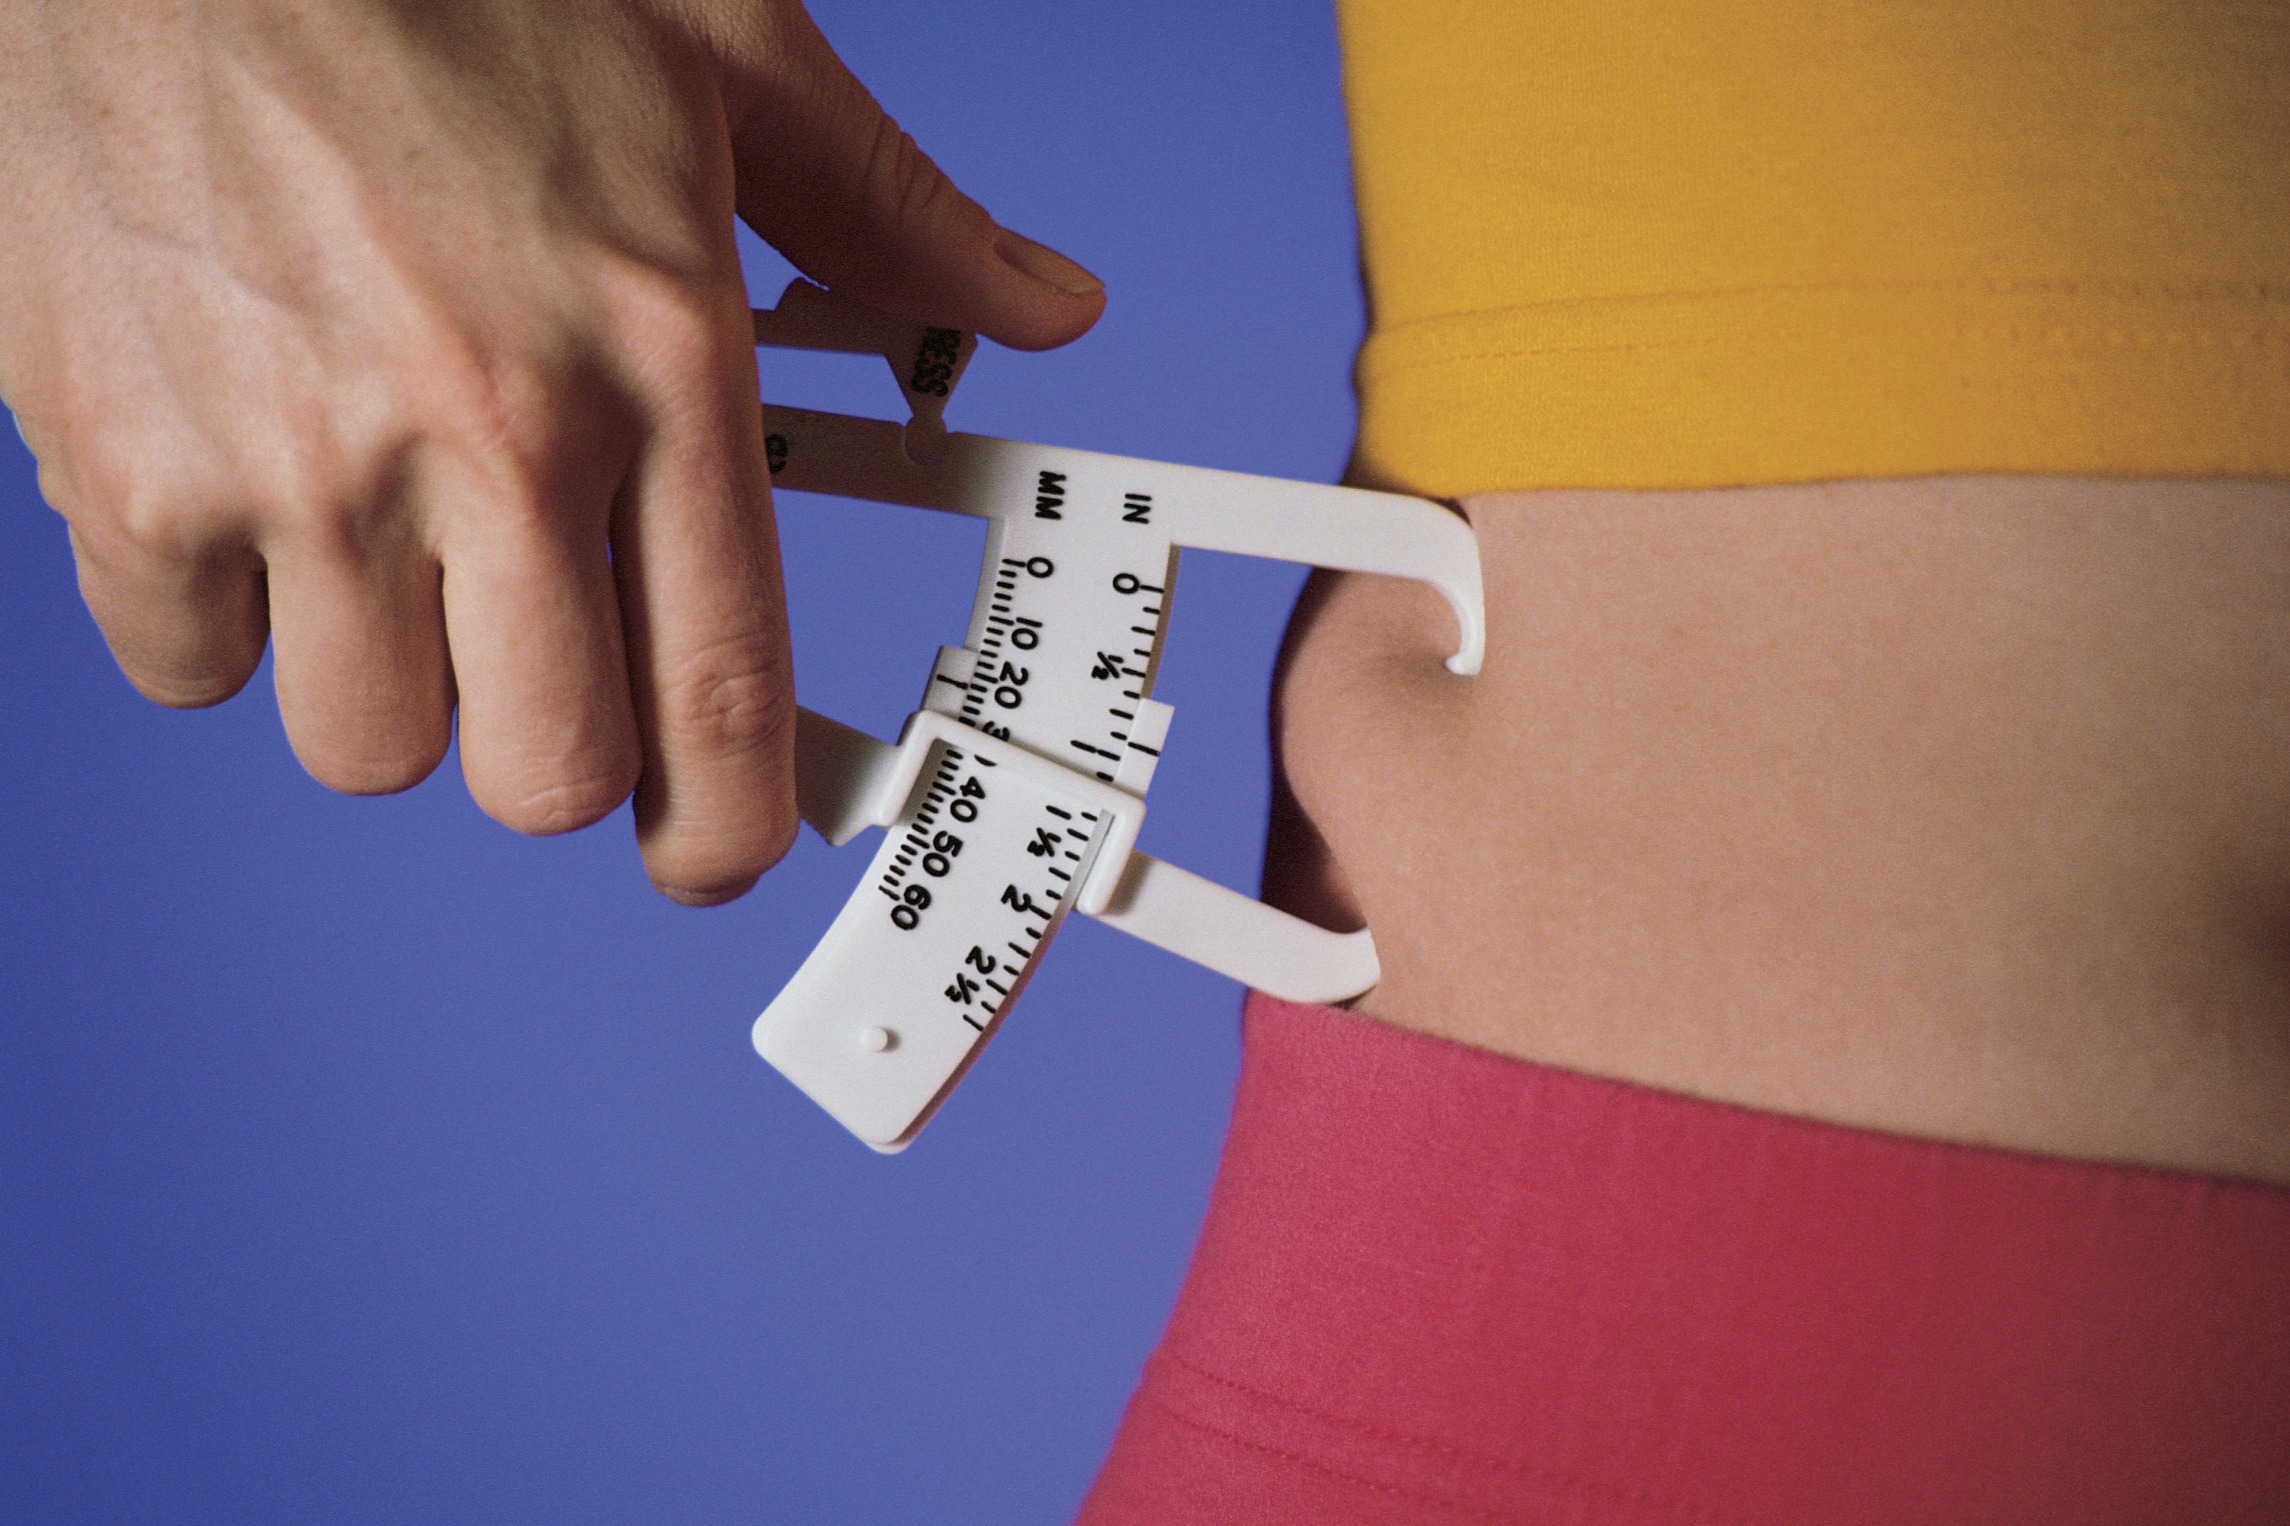 Medir el índice de masa corporal